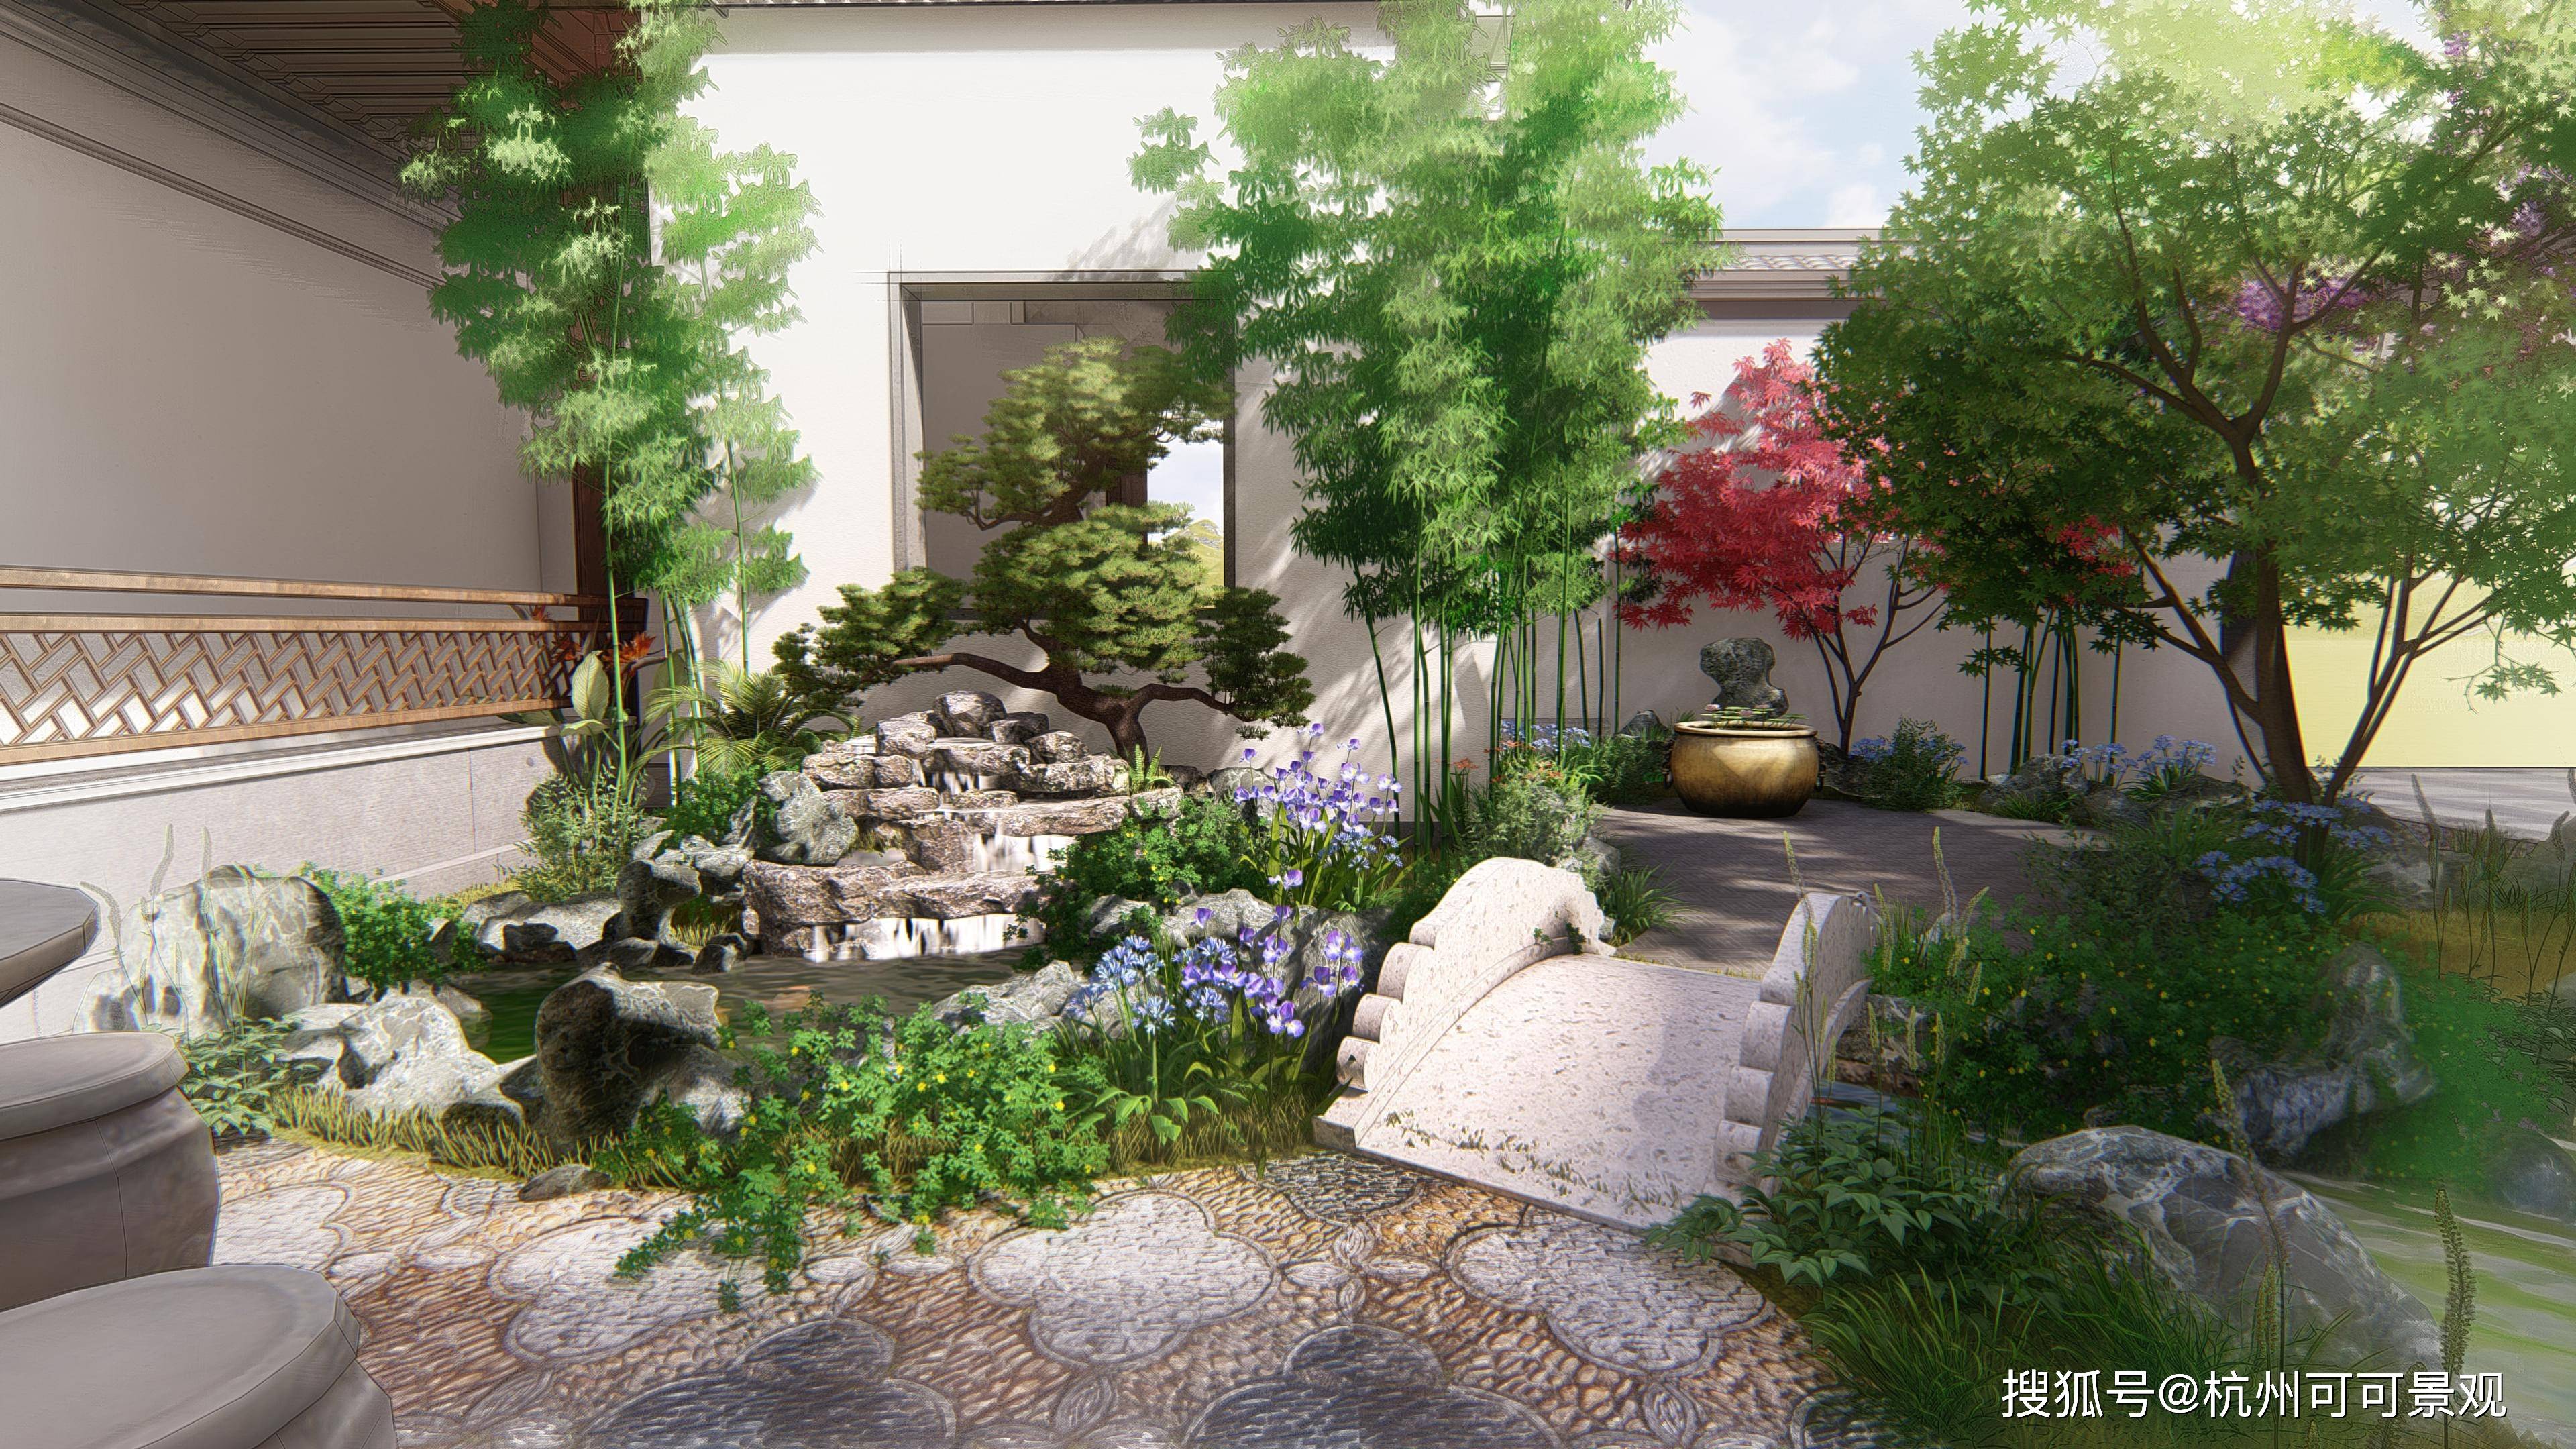 可可景观庭院设计:格调高雅的中式庭院赏析,还繁华喧嚣一份宁静和自在